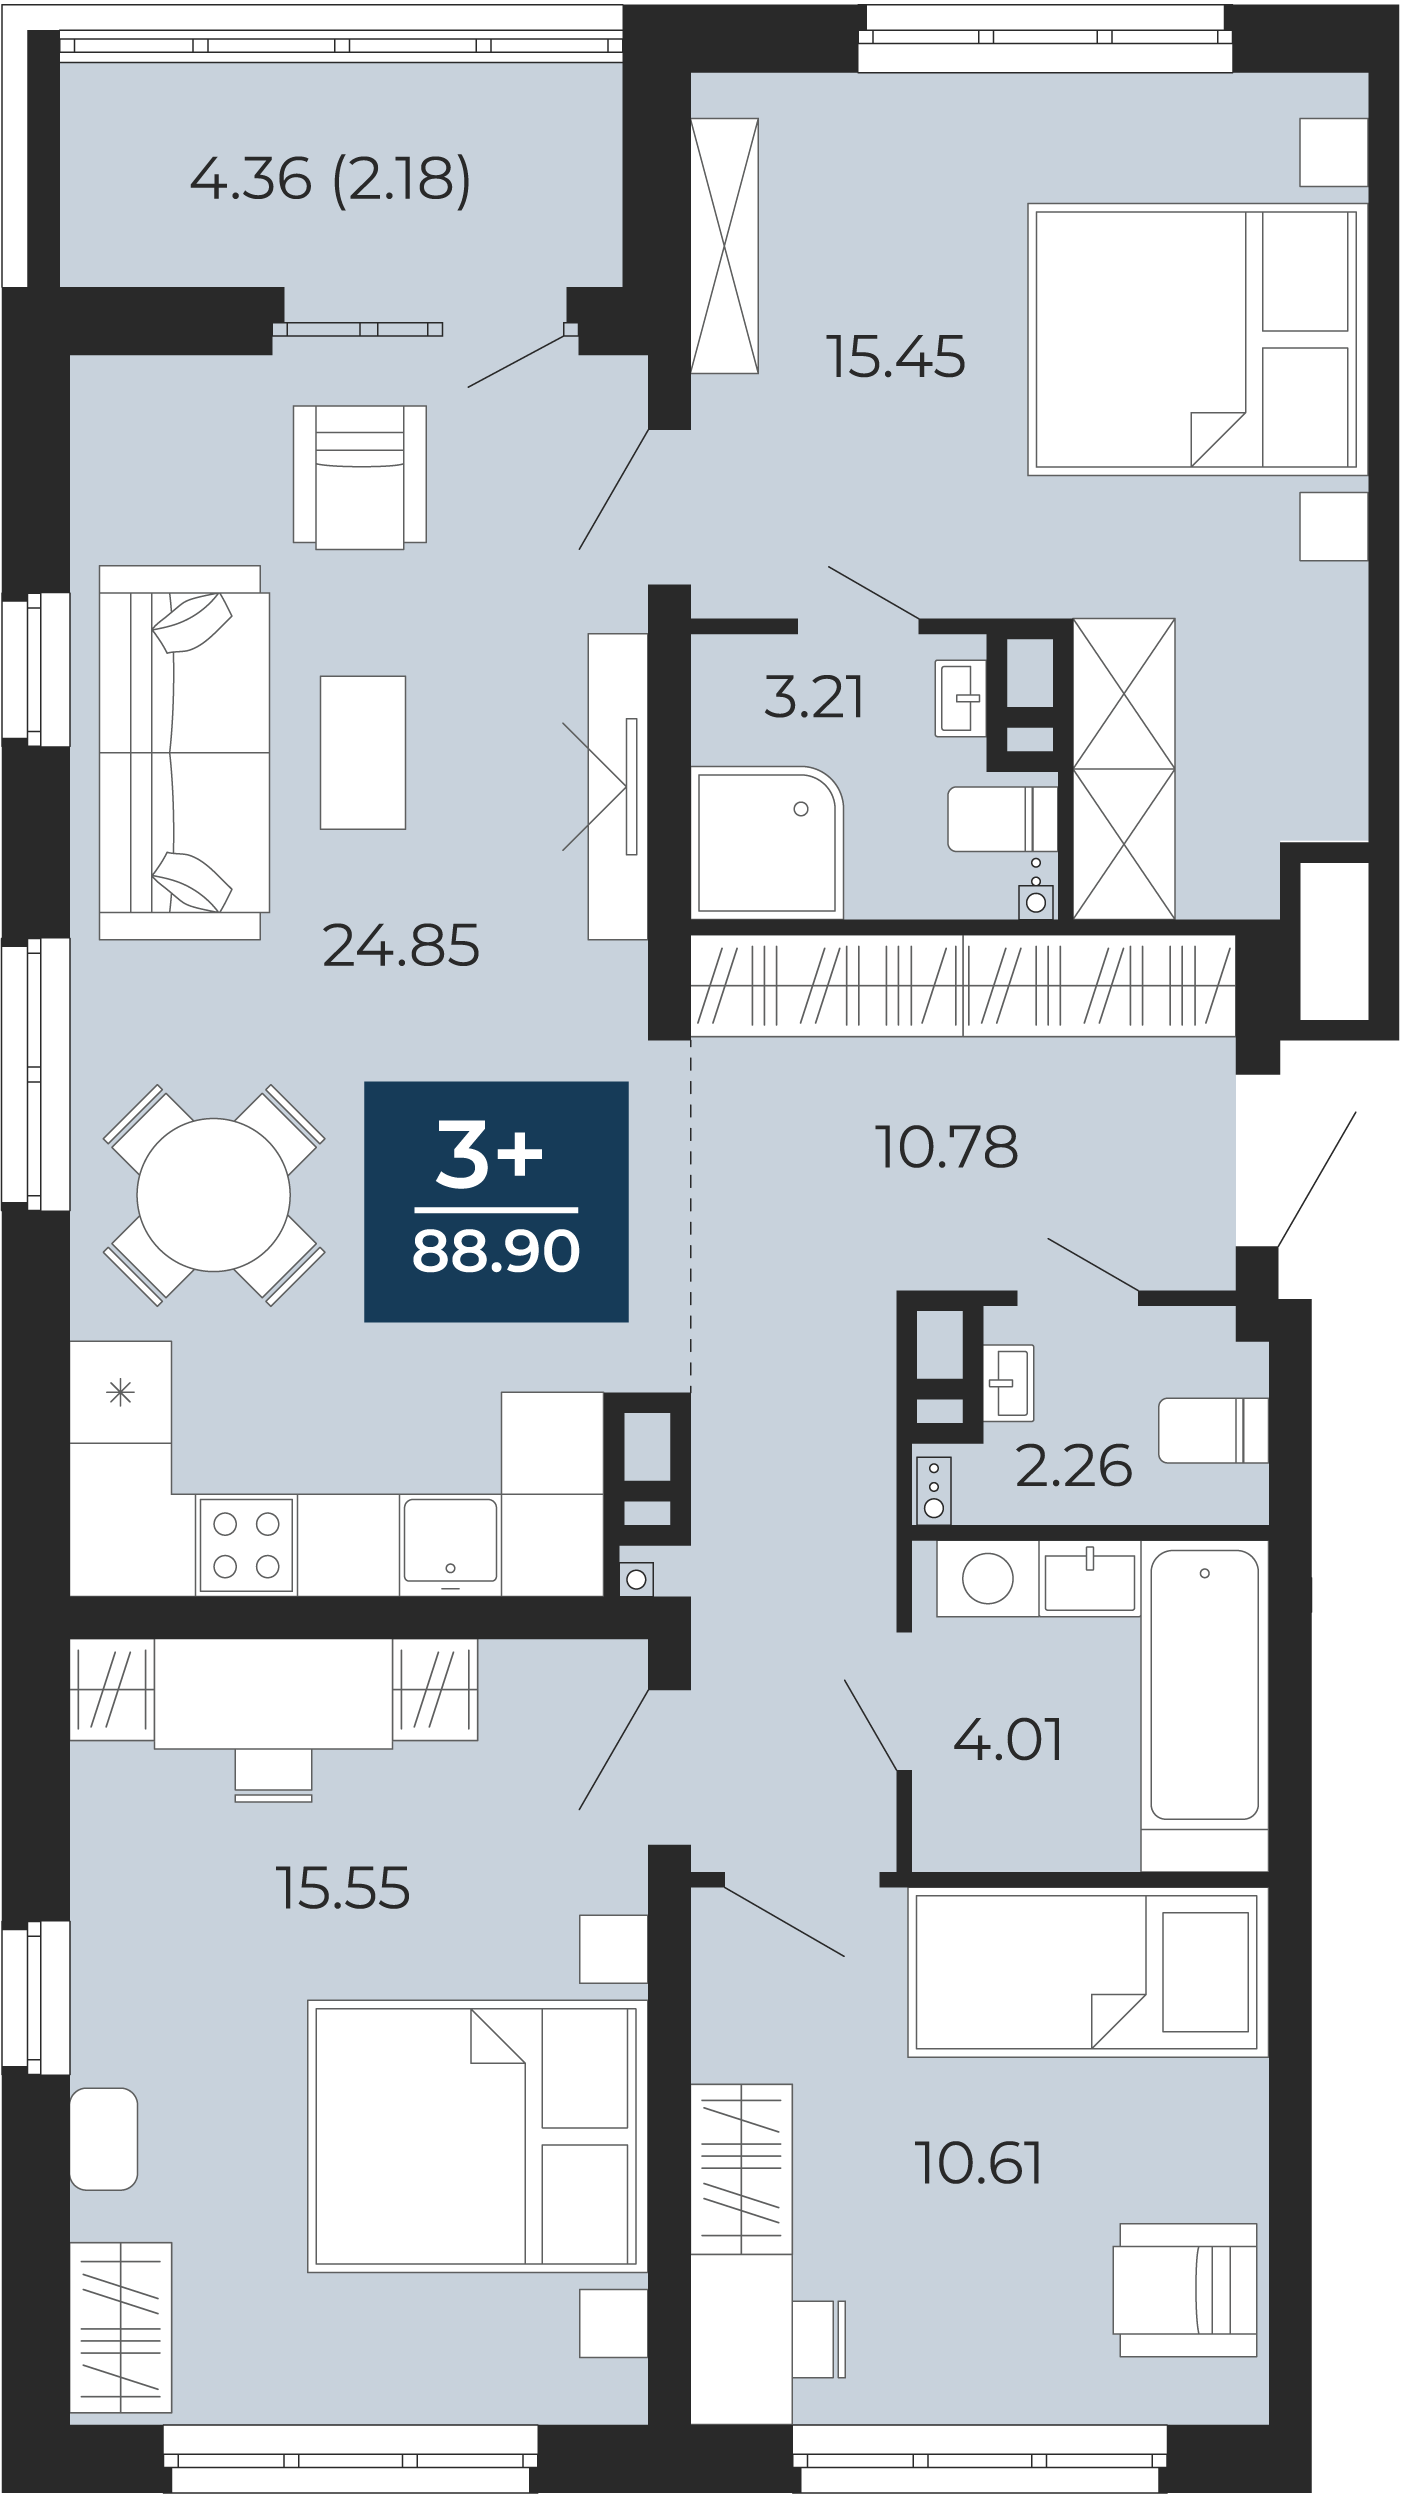 Квартира № 23, 3-комнатная, 88.9 кв. м, 5 этаж